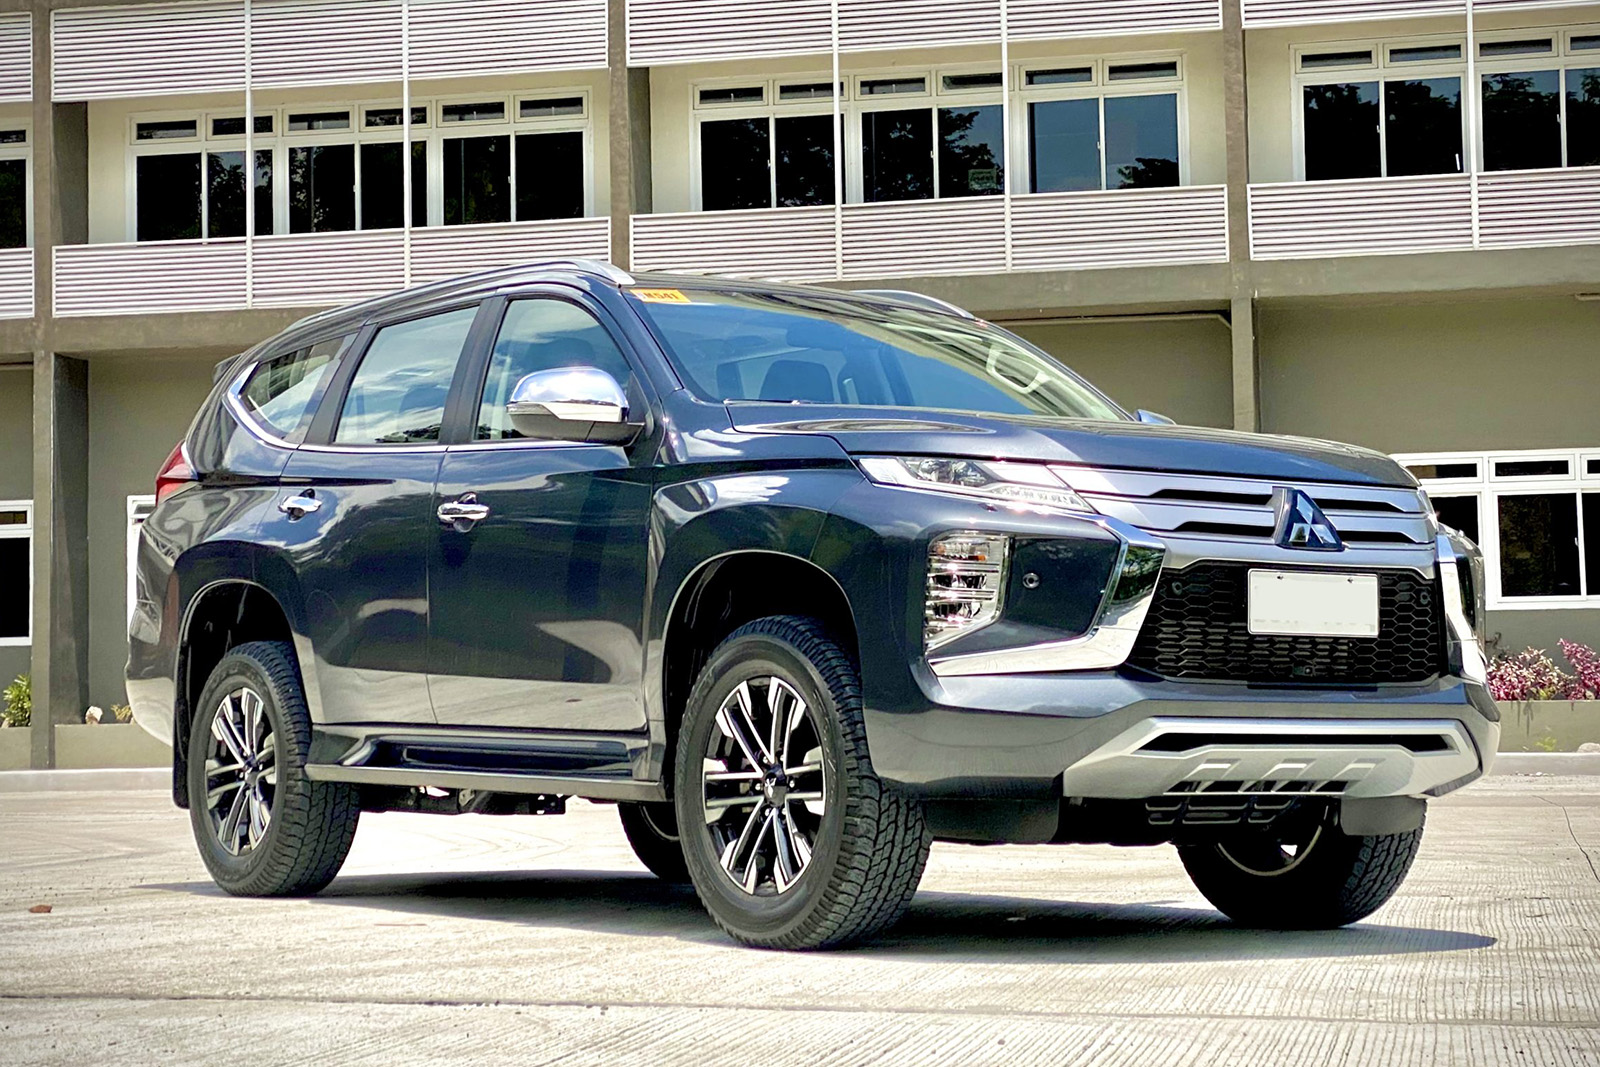 Mitsubishi Pajero Sport 2020 sắp bán tại Việt Nam lộ loạt trang bị mới, tạo sức ép cho Toyota Fortuner - Ảnh 2.